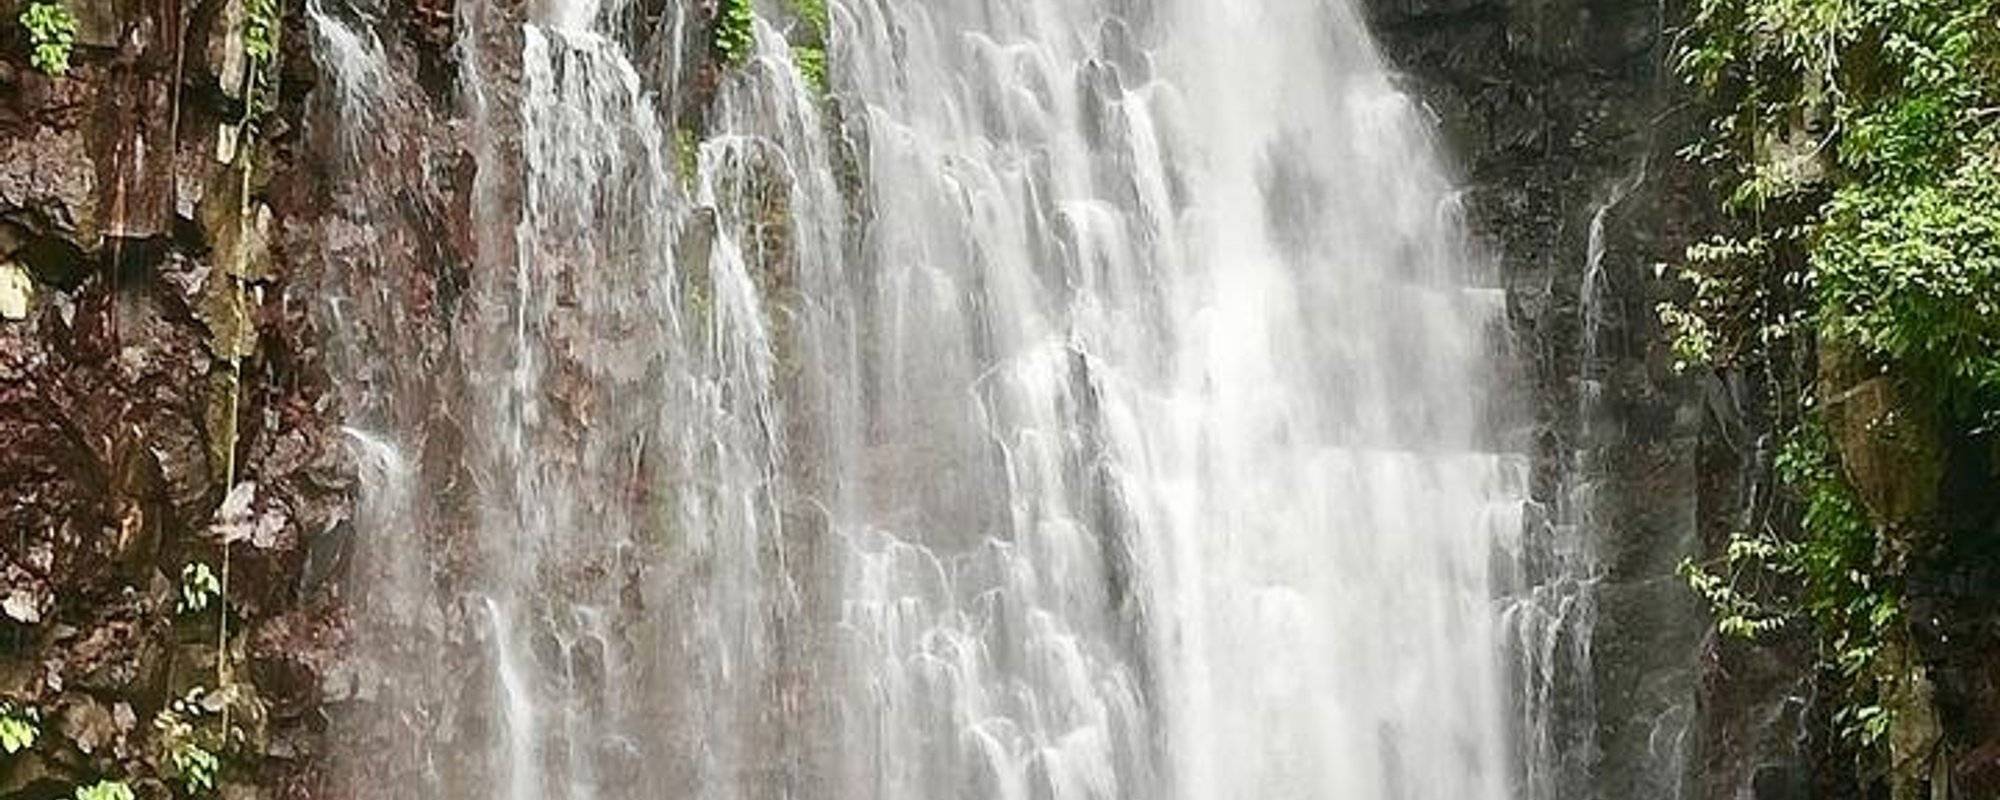 Iligan or Tinago (hidden) Falls 